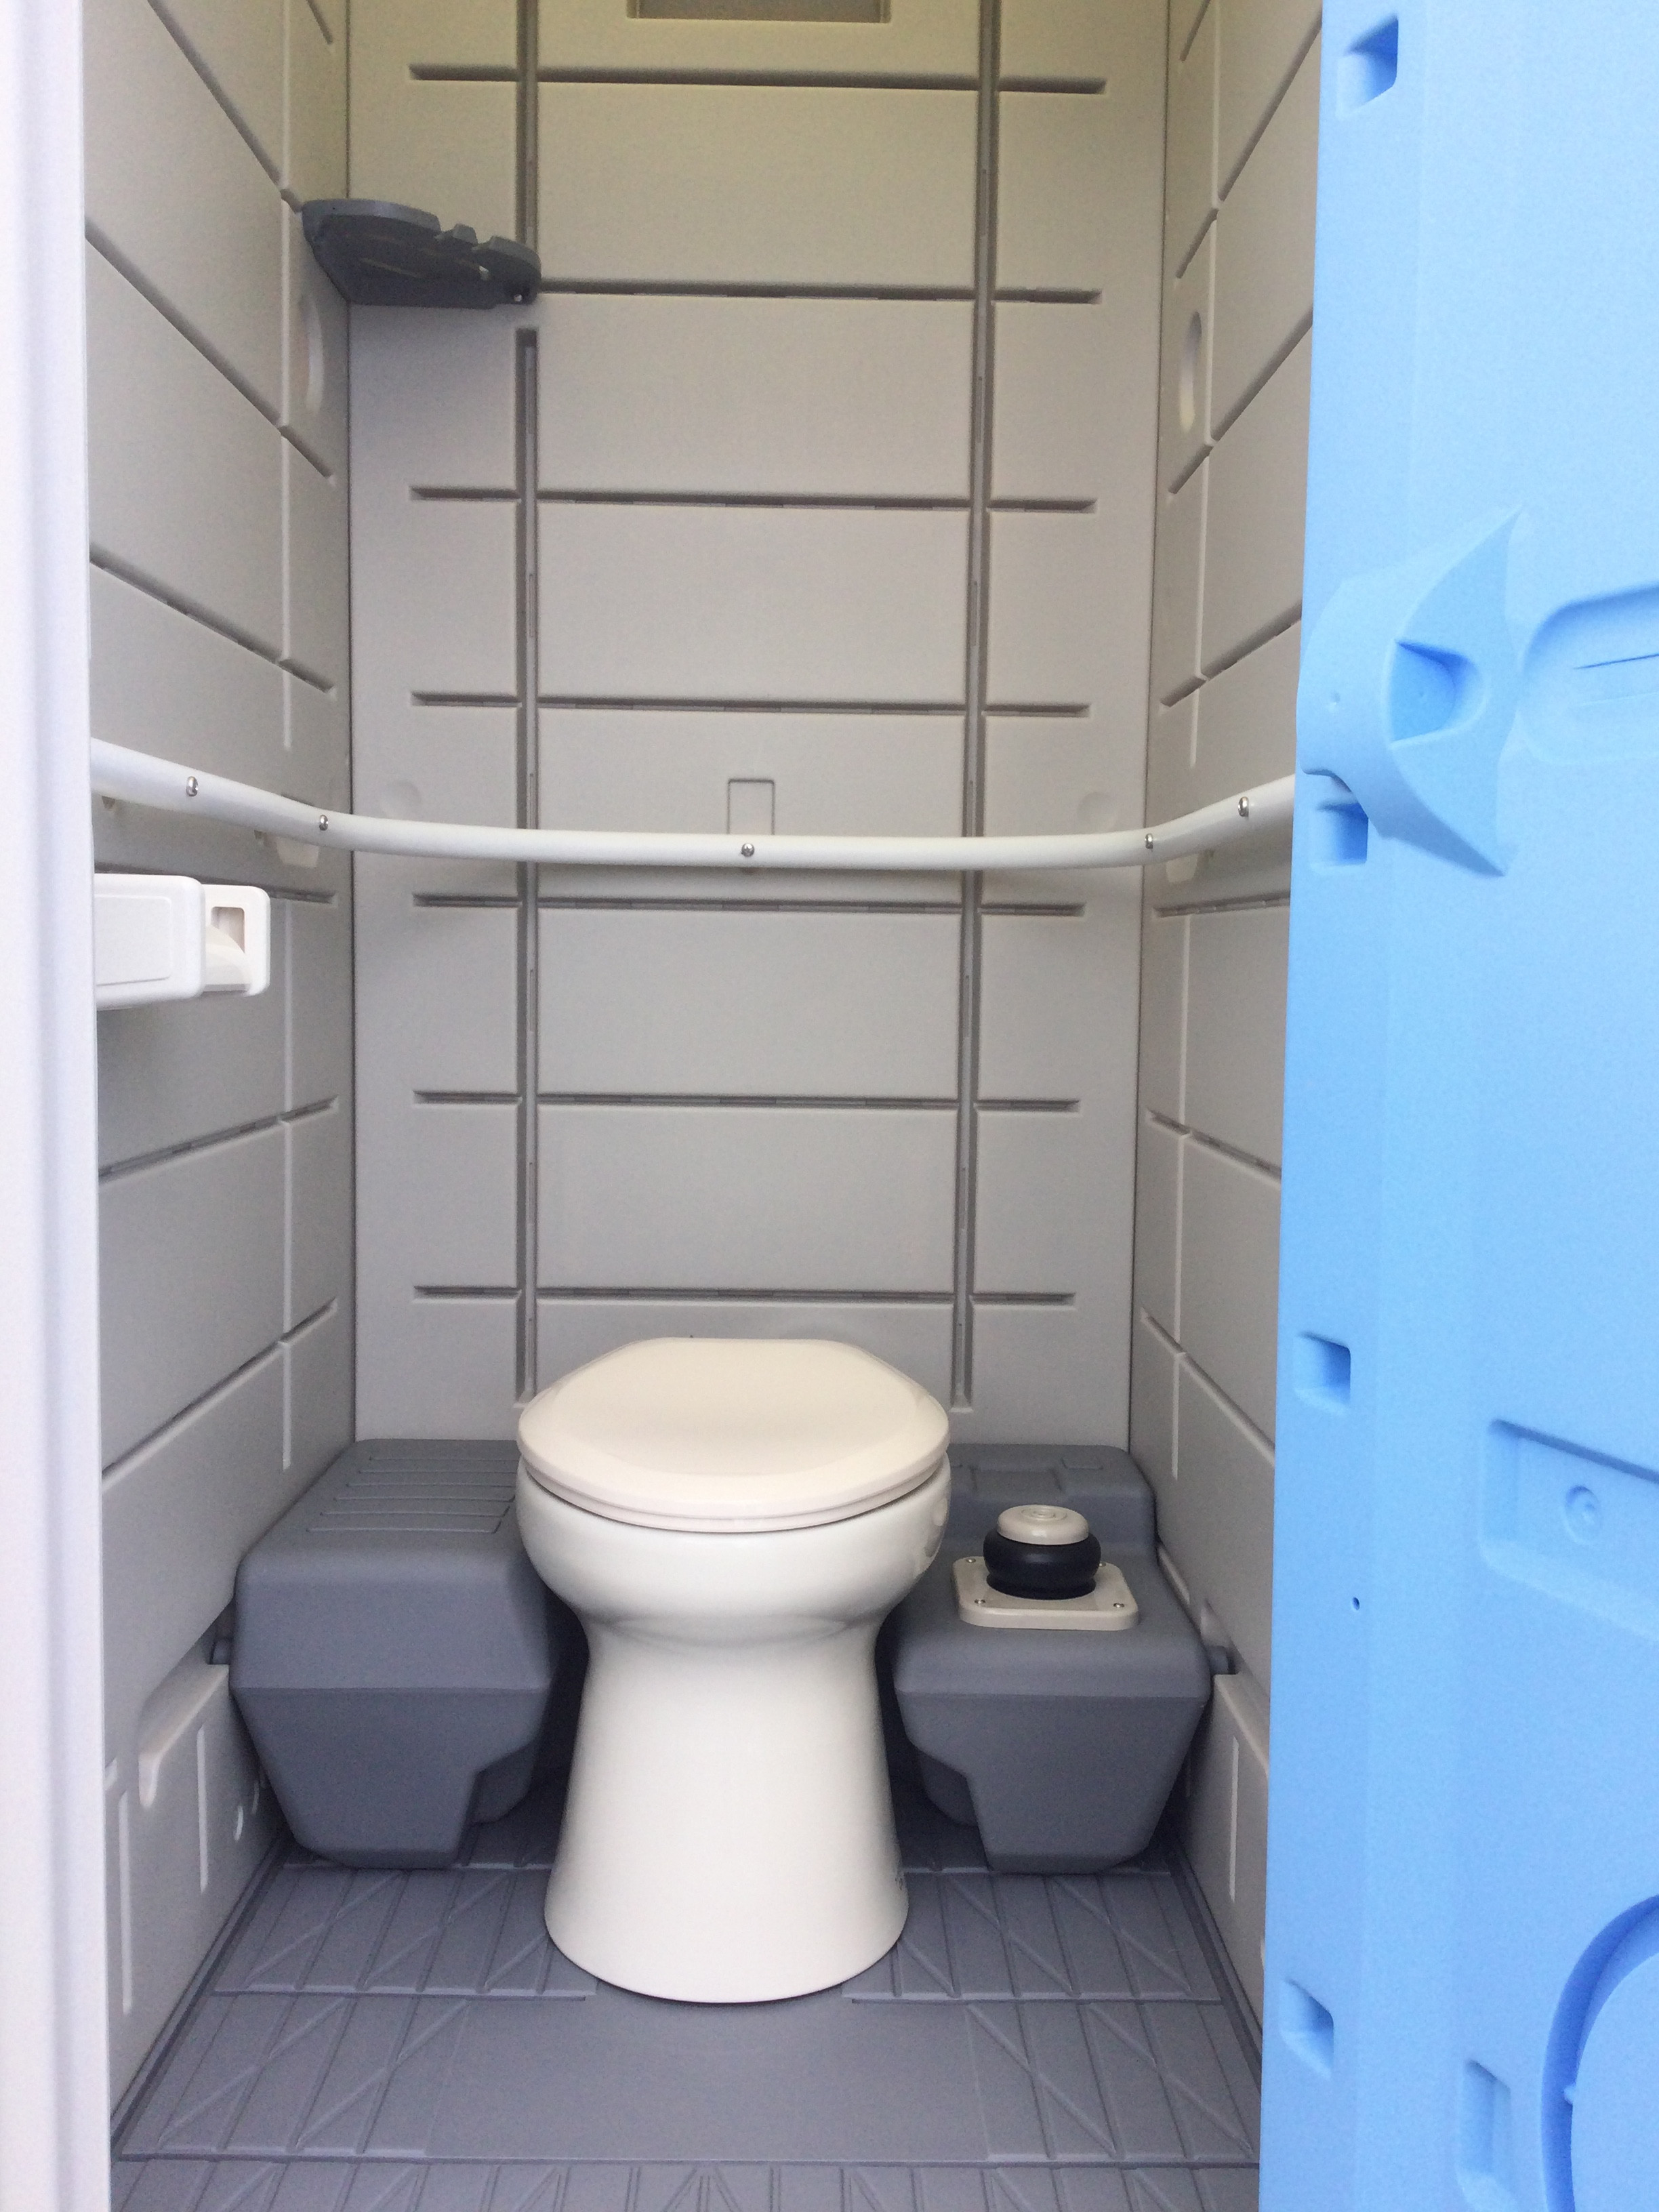 ー品販売 仮設トイレ ハウス コンテナ 建設資材ストア新品 洋式簡易水洗トイレ 陶器便器 ポンプ式 給排水工事不要